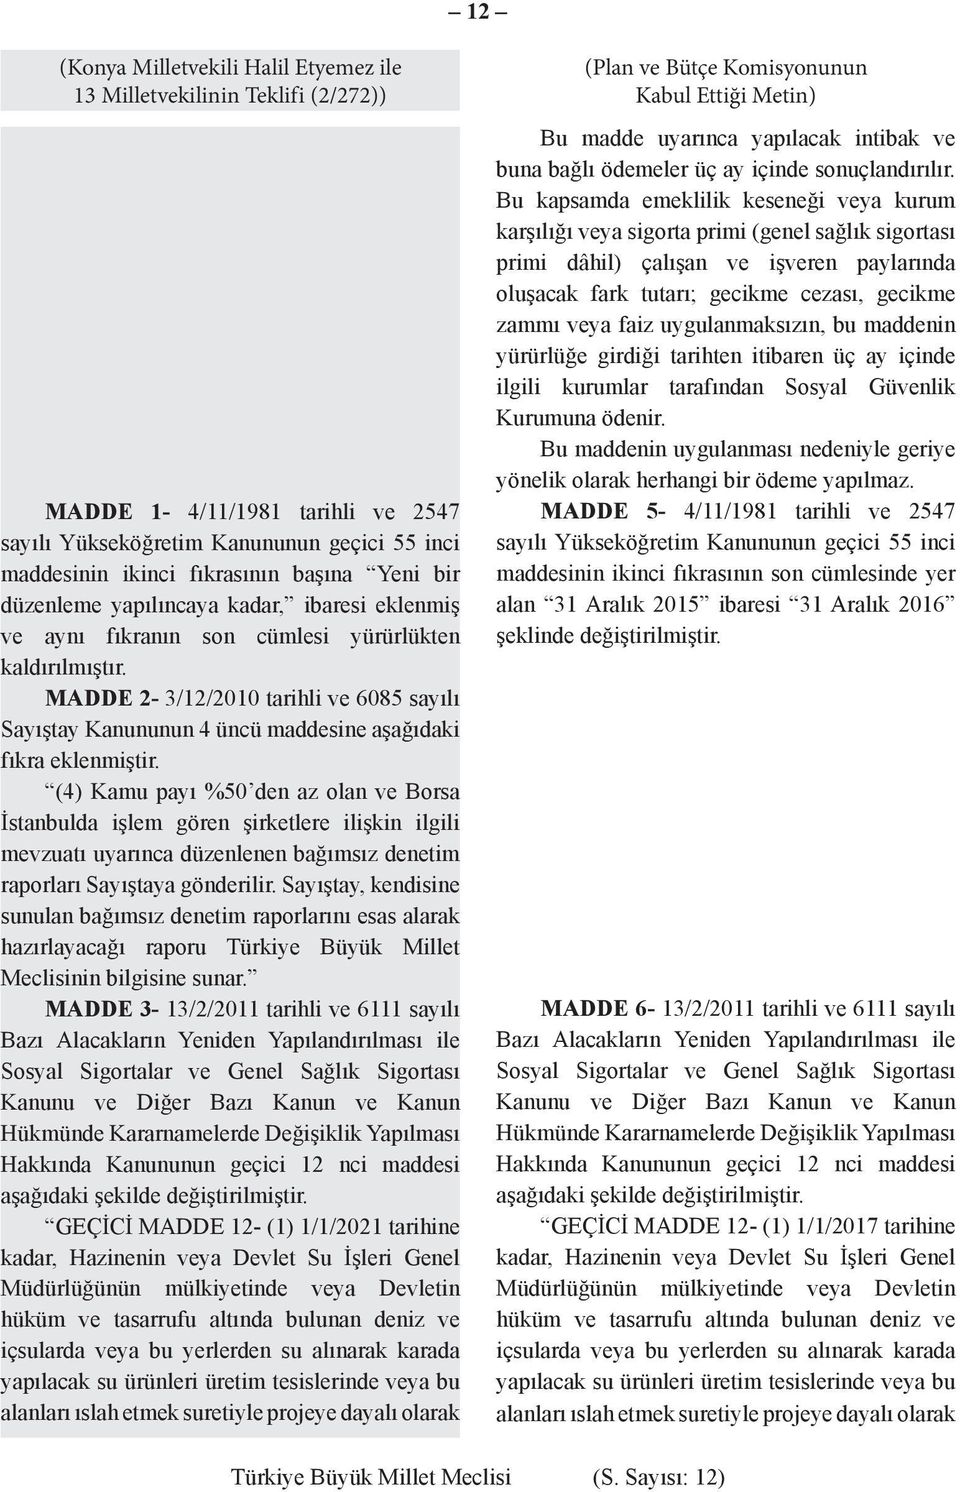 MADDE 2-3/12/2010 tarihli ve 6085 sayılı Sayıştay Kanununun 4 üncü maddesine aşağıdaki fıkra eklenmiştir.